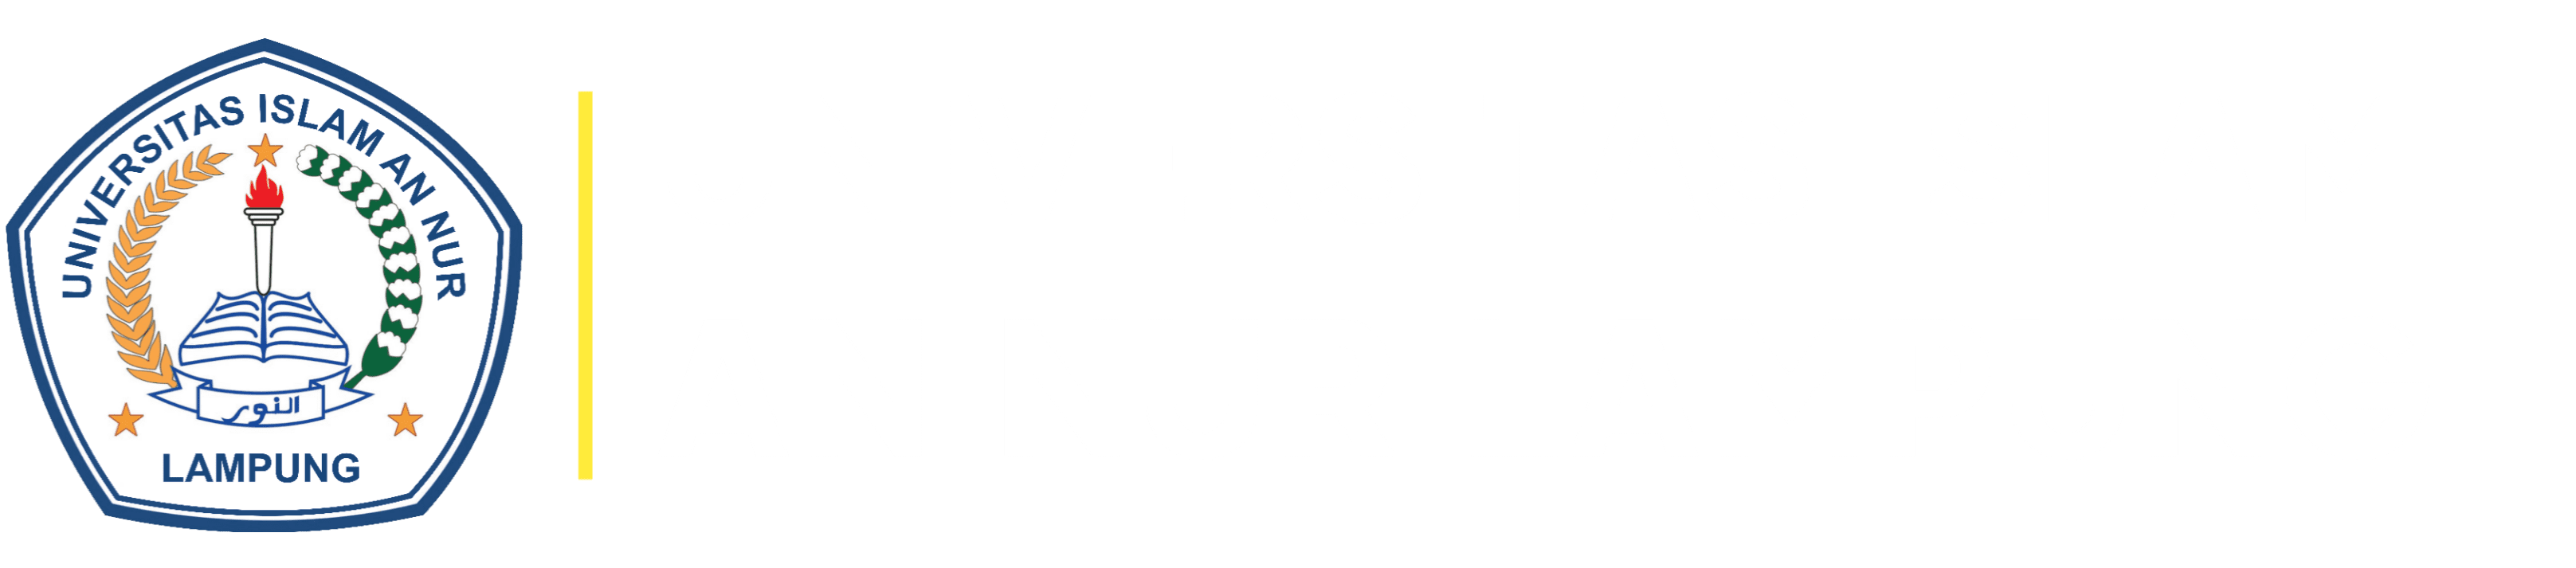 Universitas An Nur Lampung